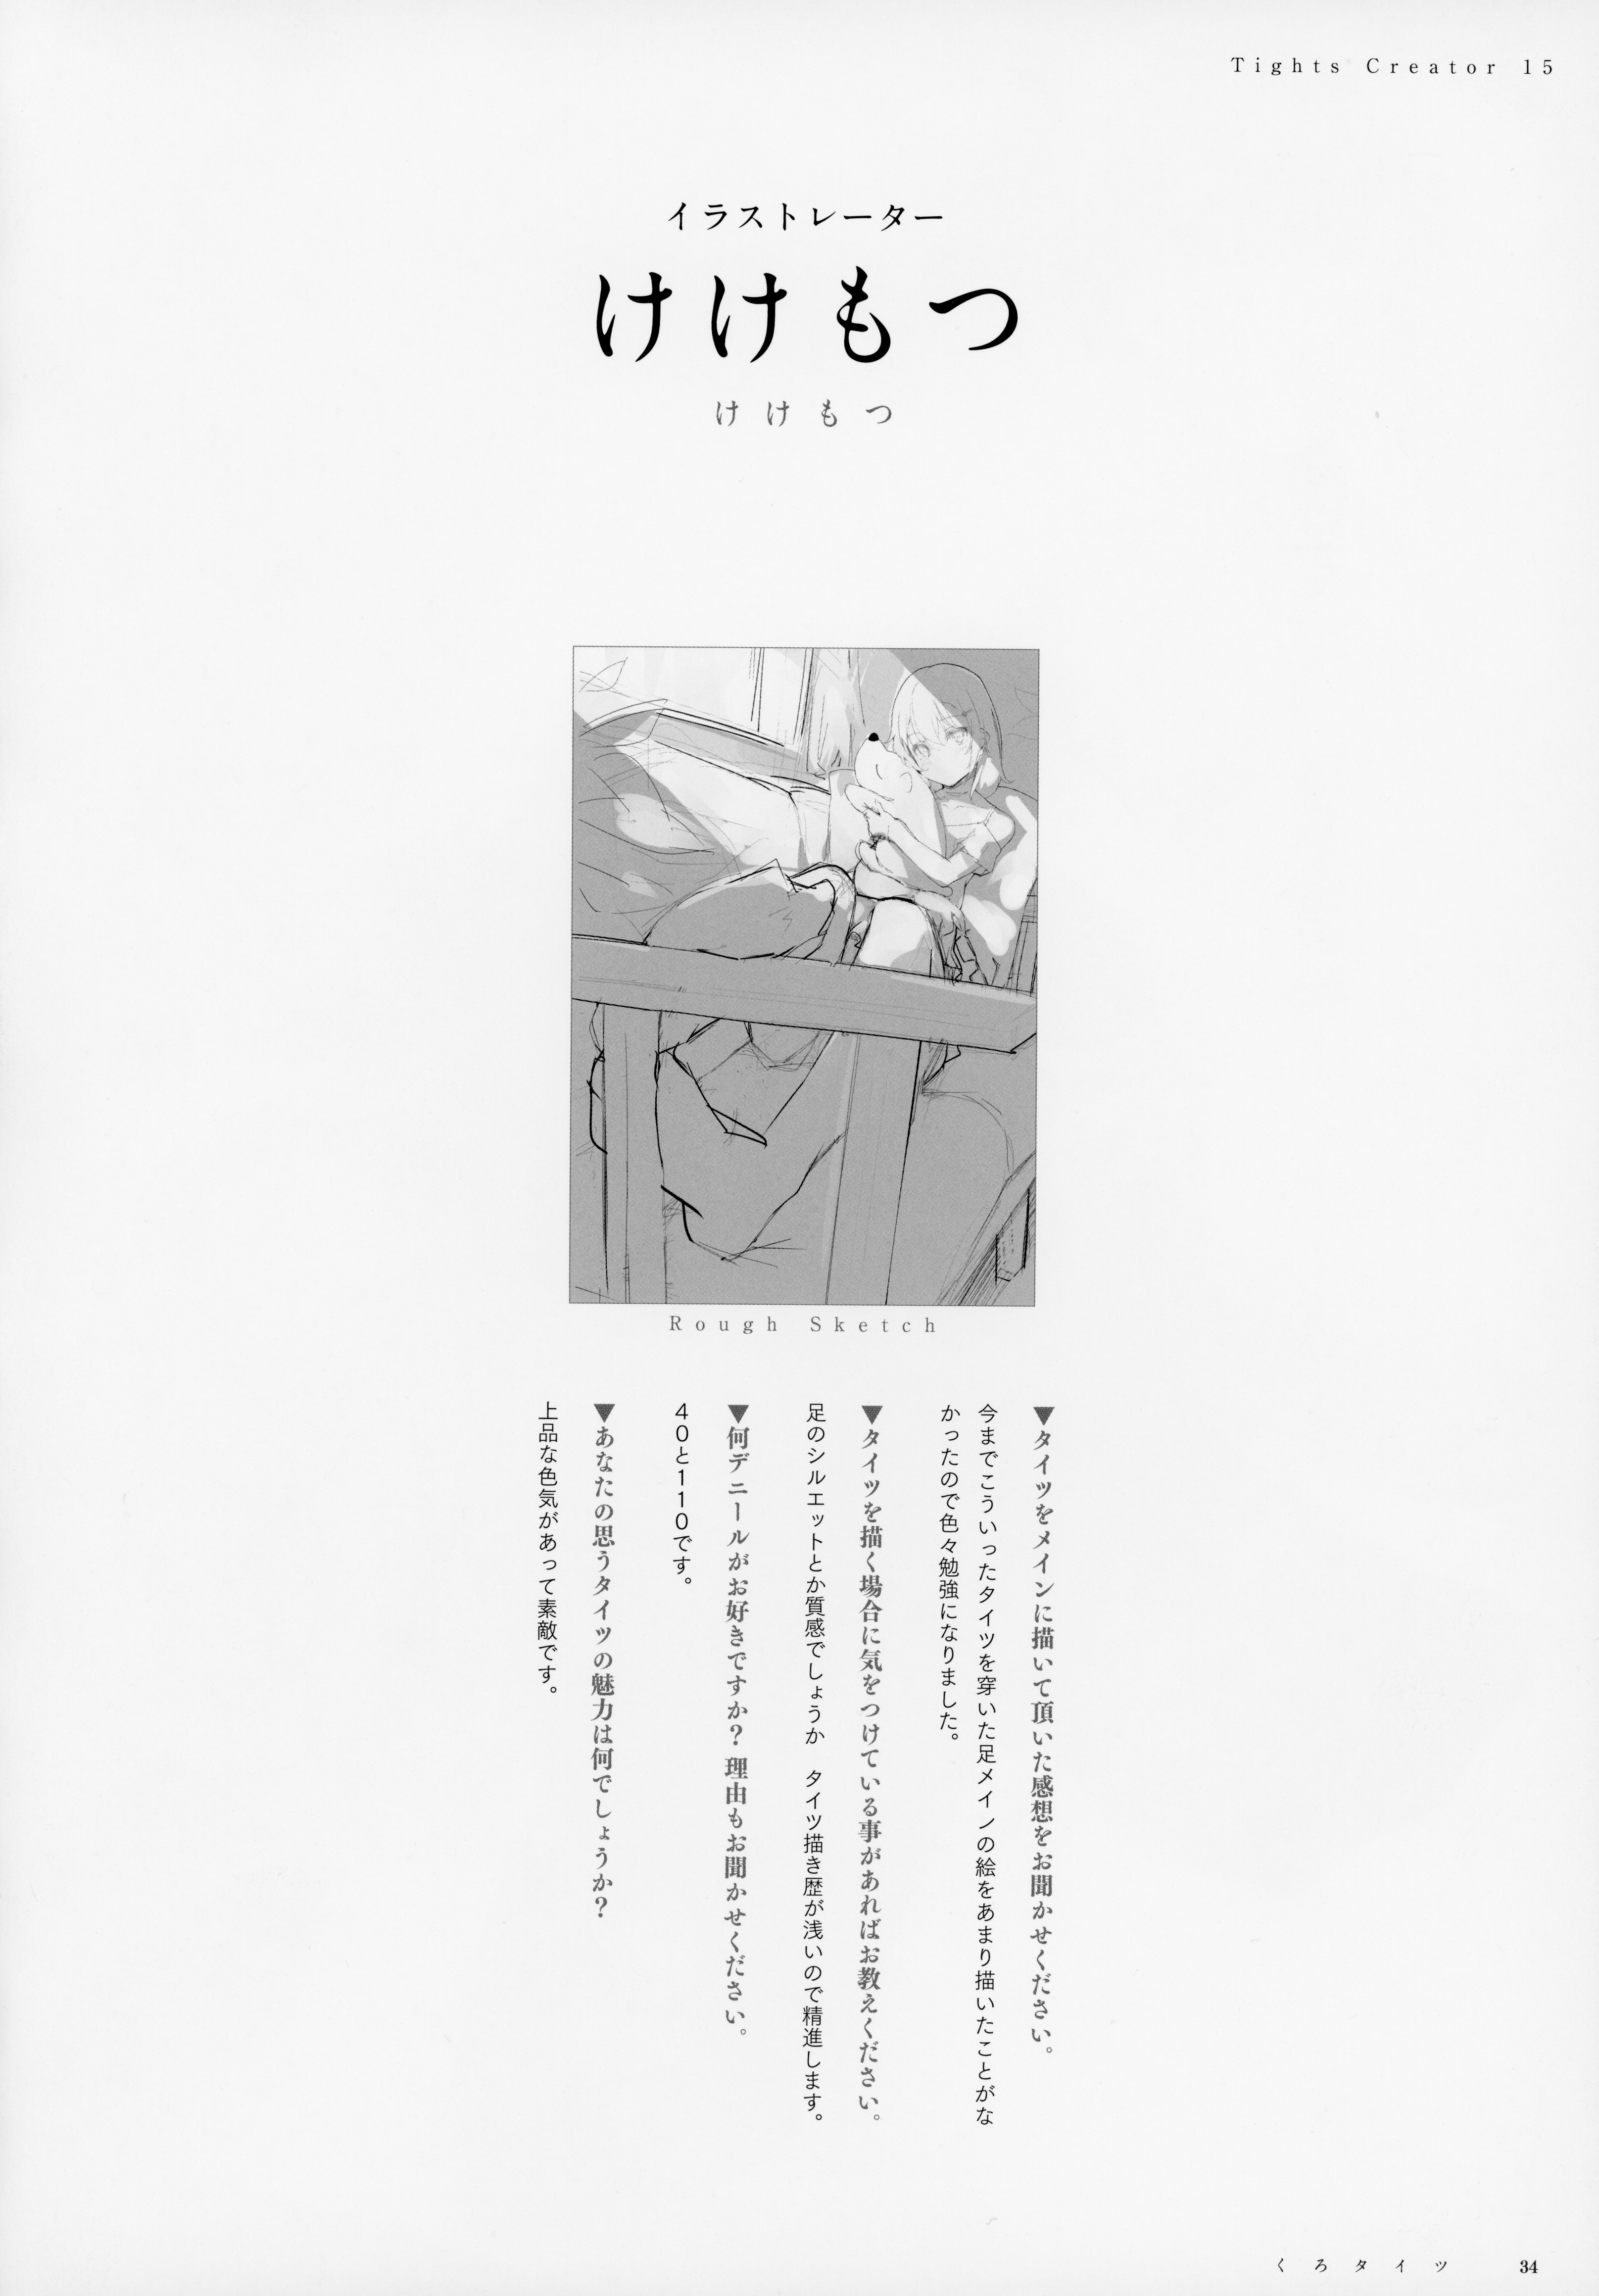 【オリジナル】豪華作家陣が描く、黒タイツイラスト総集本！の画像34枚目